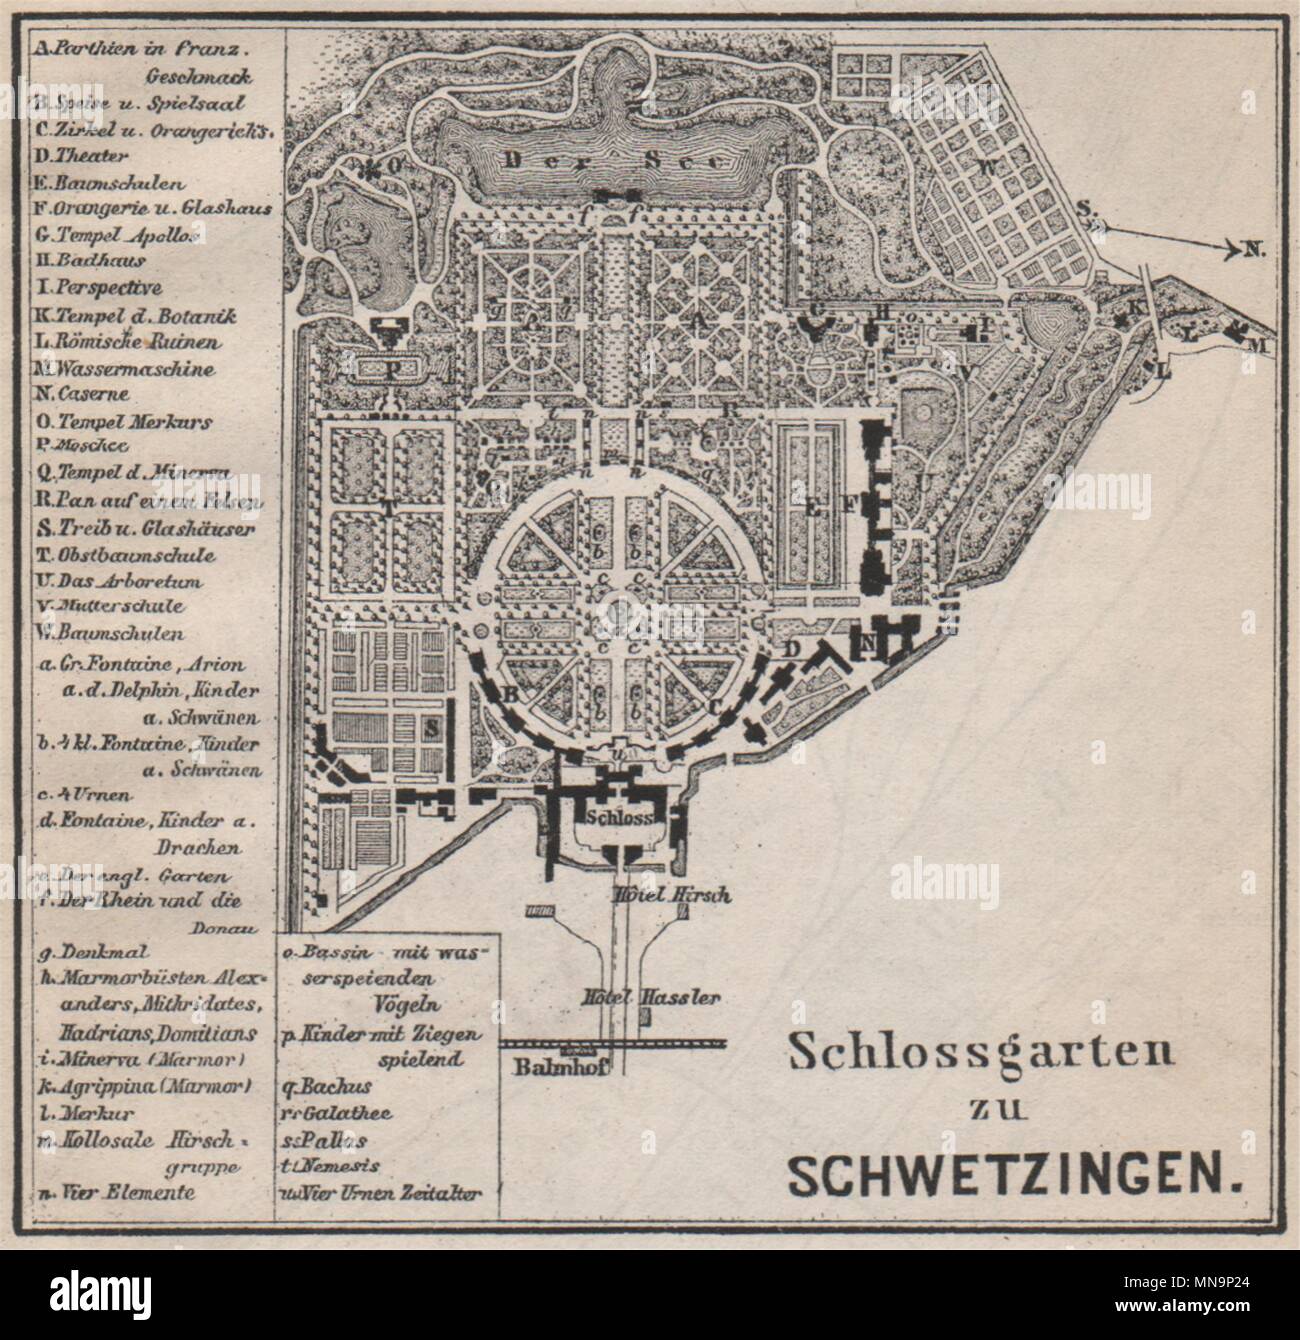 SCHLOSSGARTEN SCHWETZINGEN Palace ground plan. Baden-Württemberg. SMALL 1896 map Stock Photo